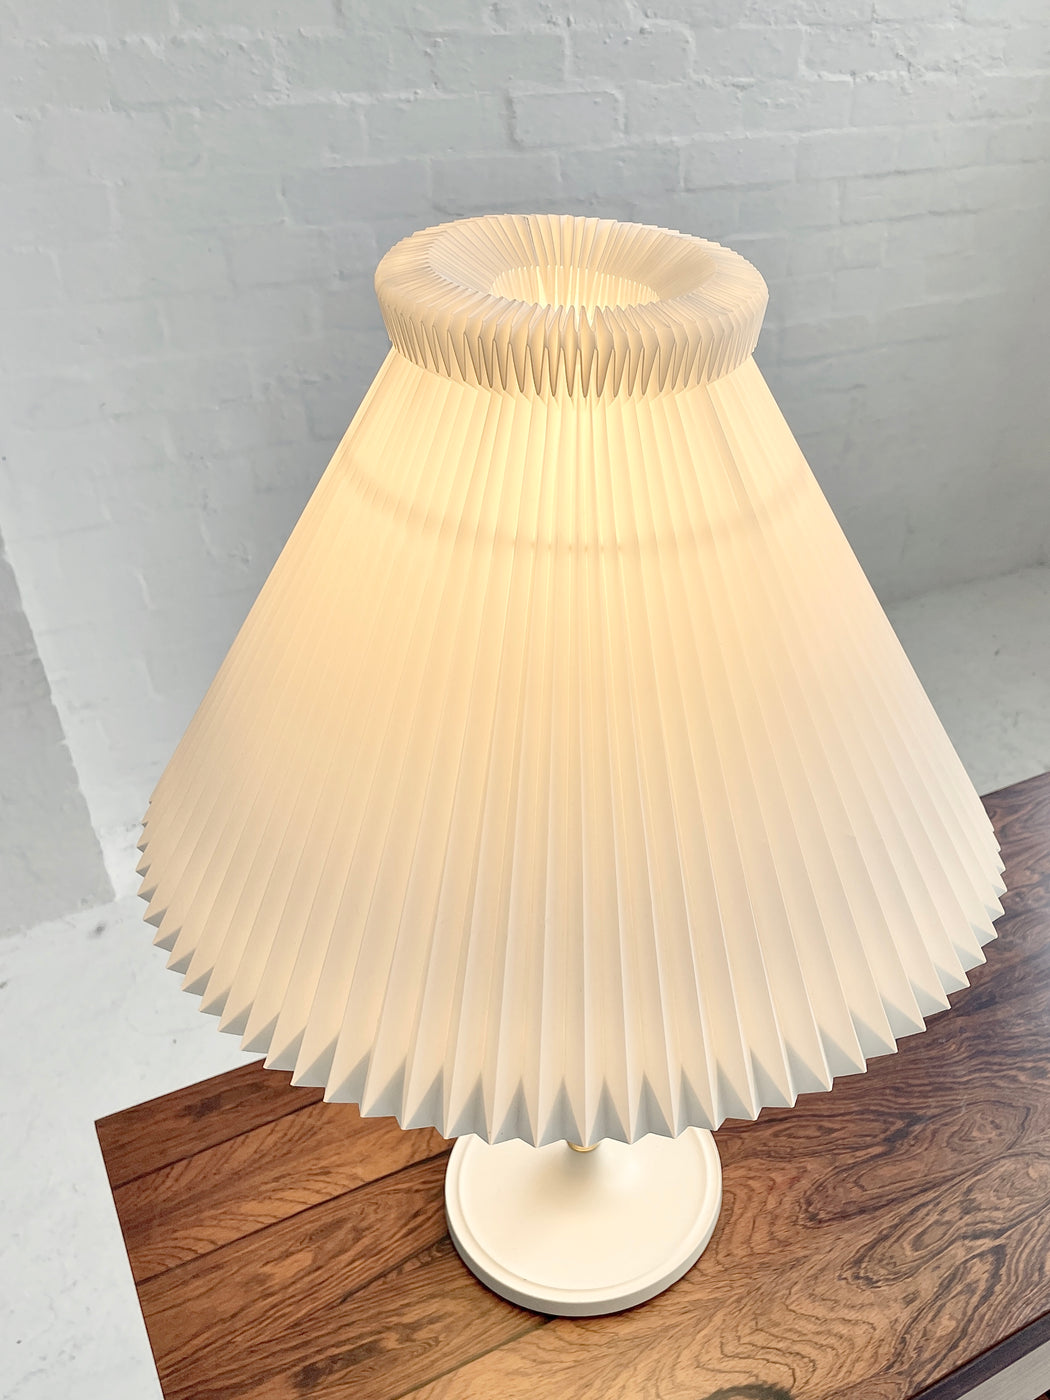 Aage Petersen 'Model 328' Le Klint Table Lamp